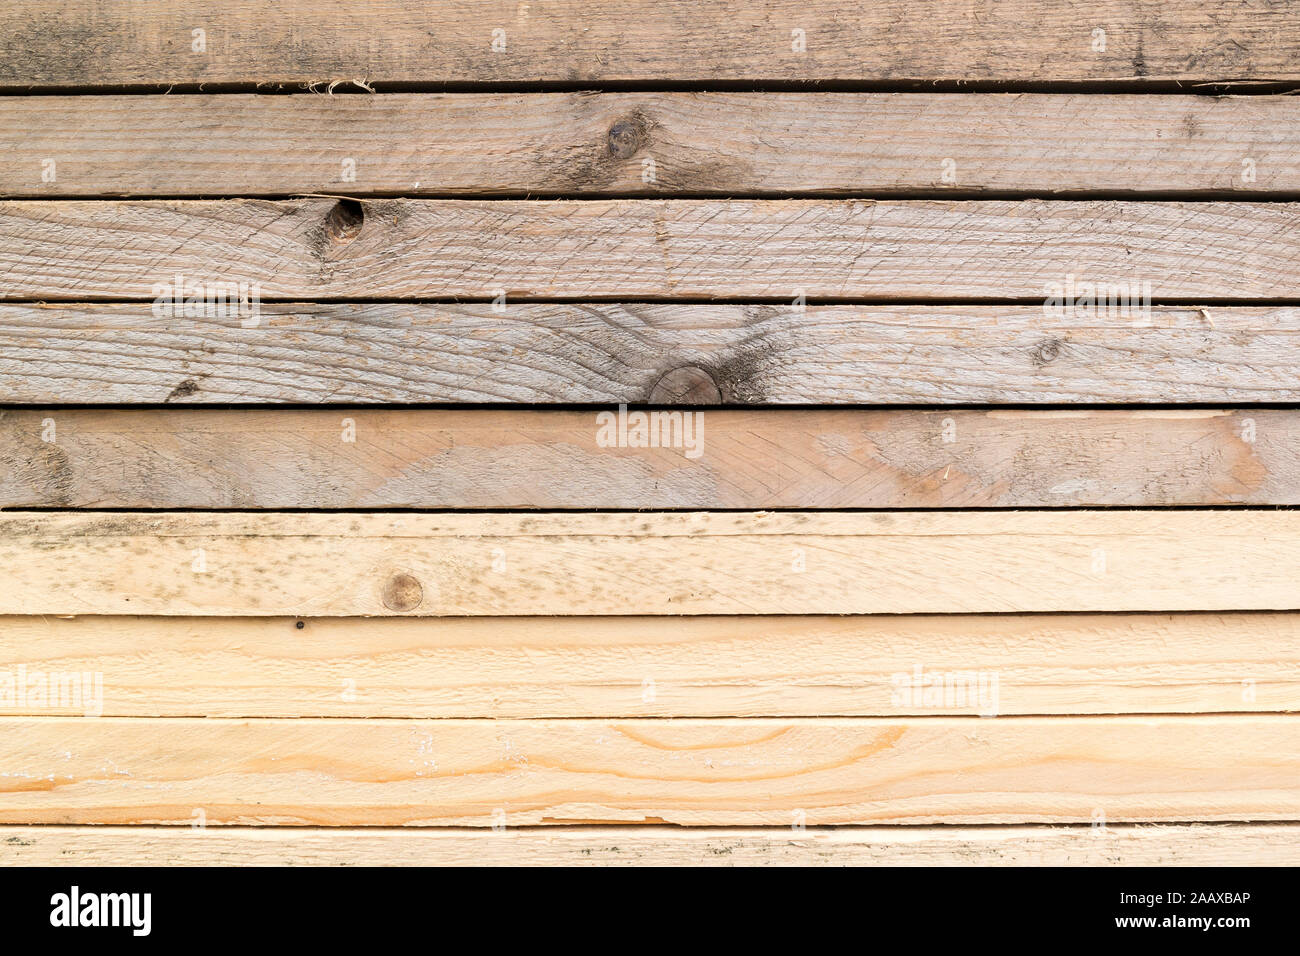 Close-up de planches de bois empilées pour construire une maison Banque D'Images